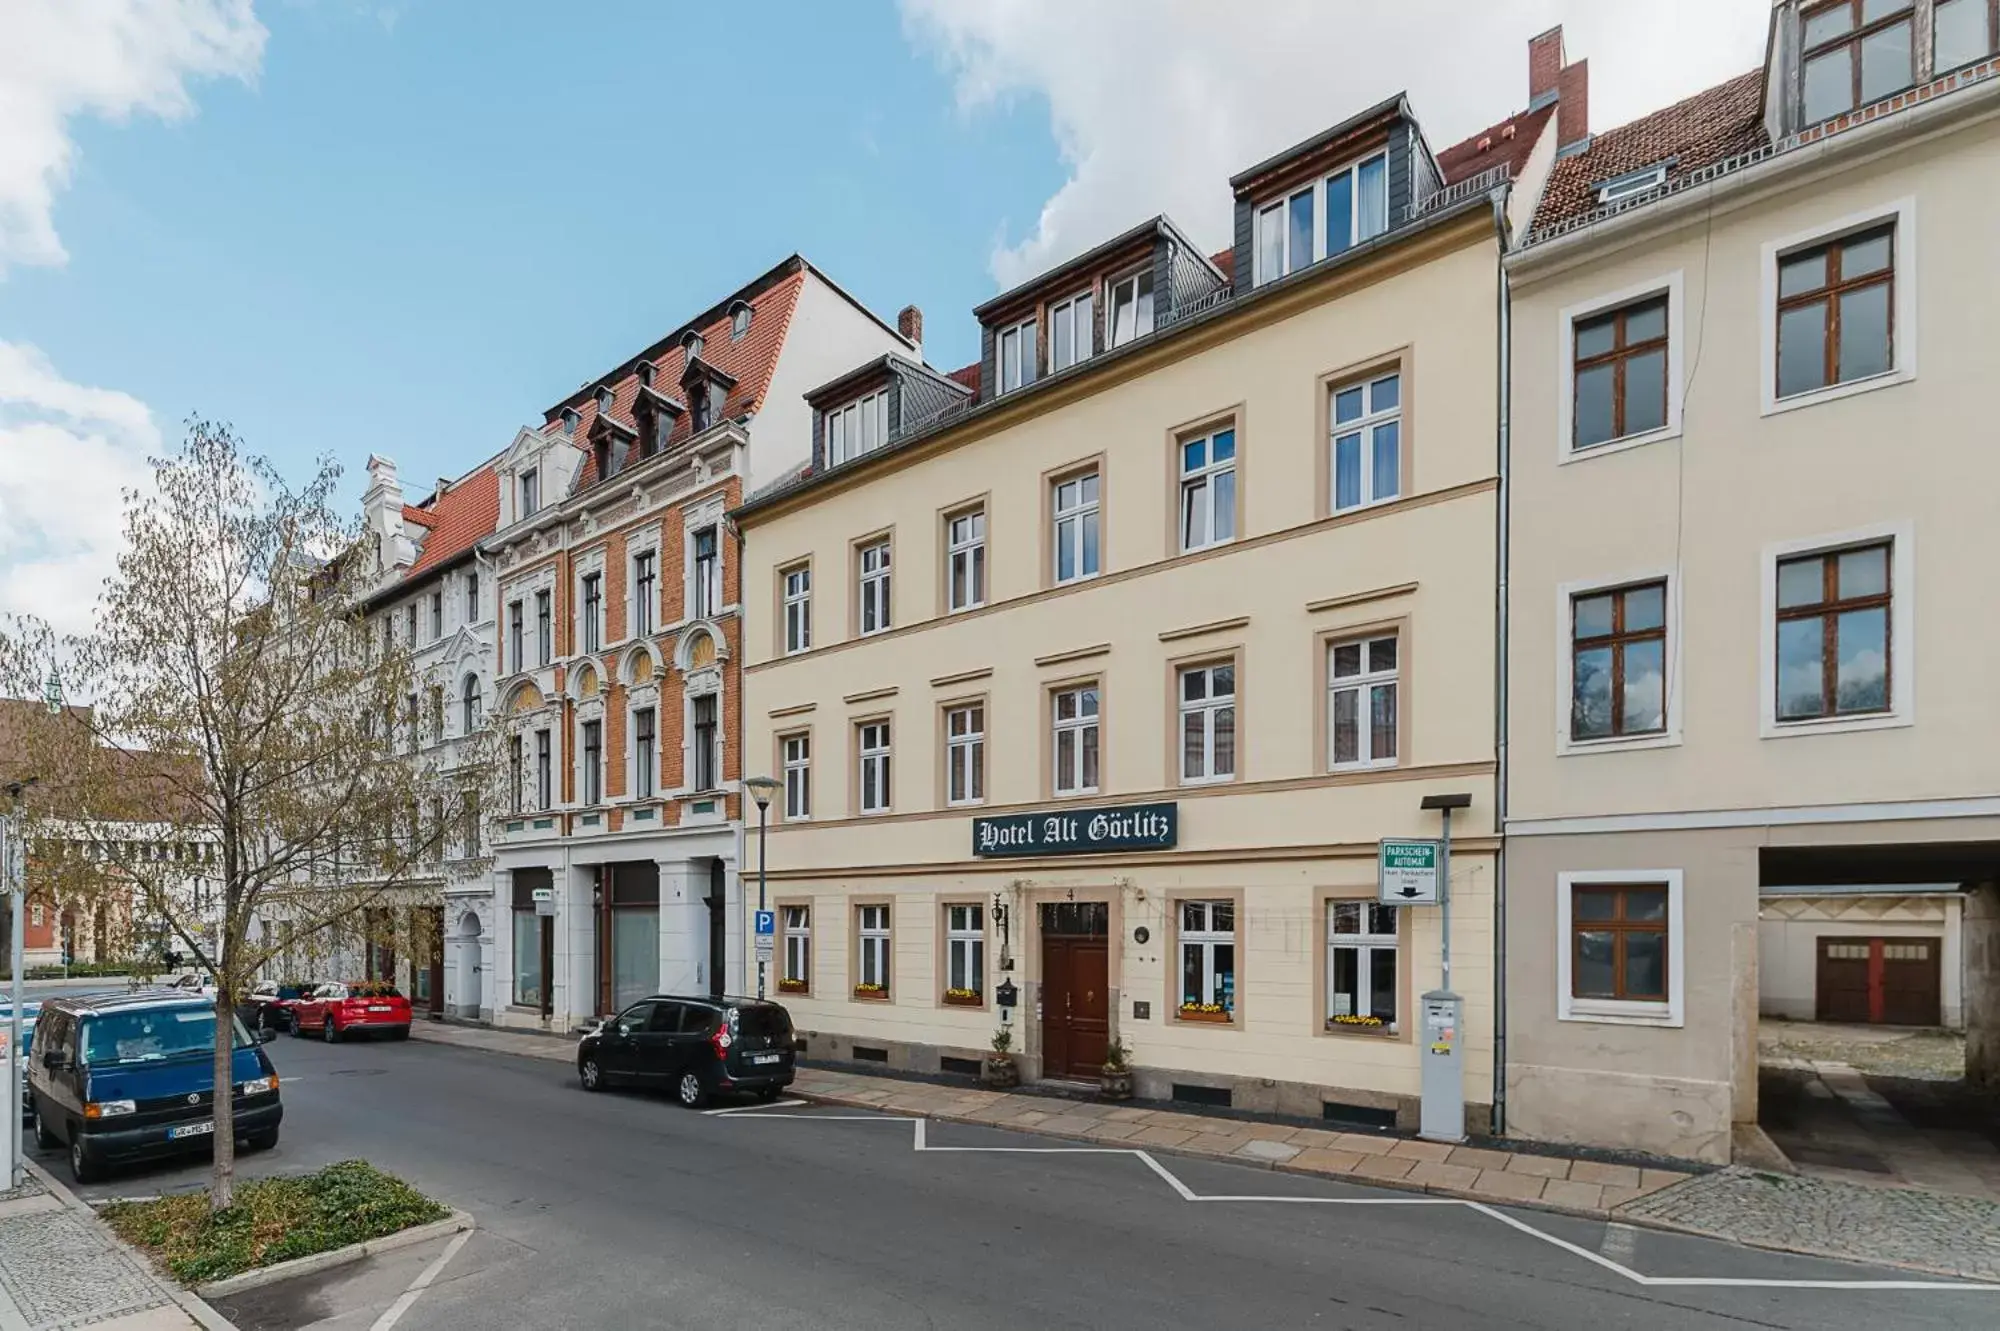 Property building in Hotel Alt Görlitz